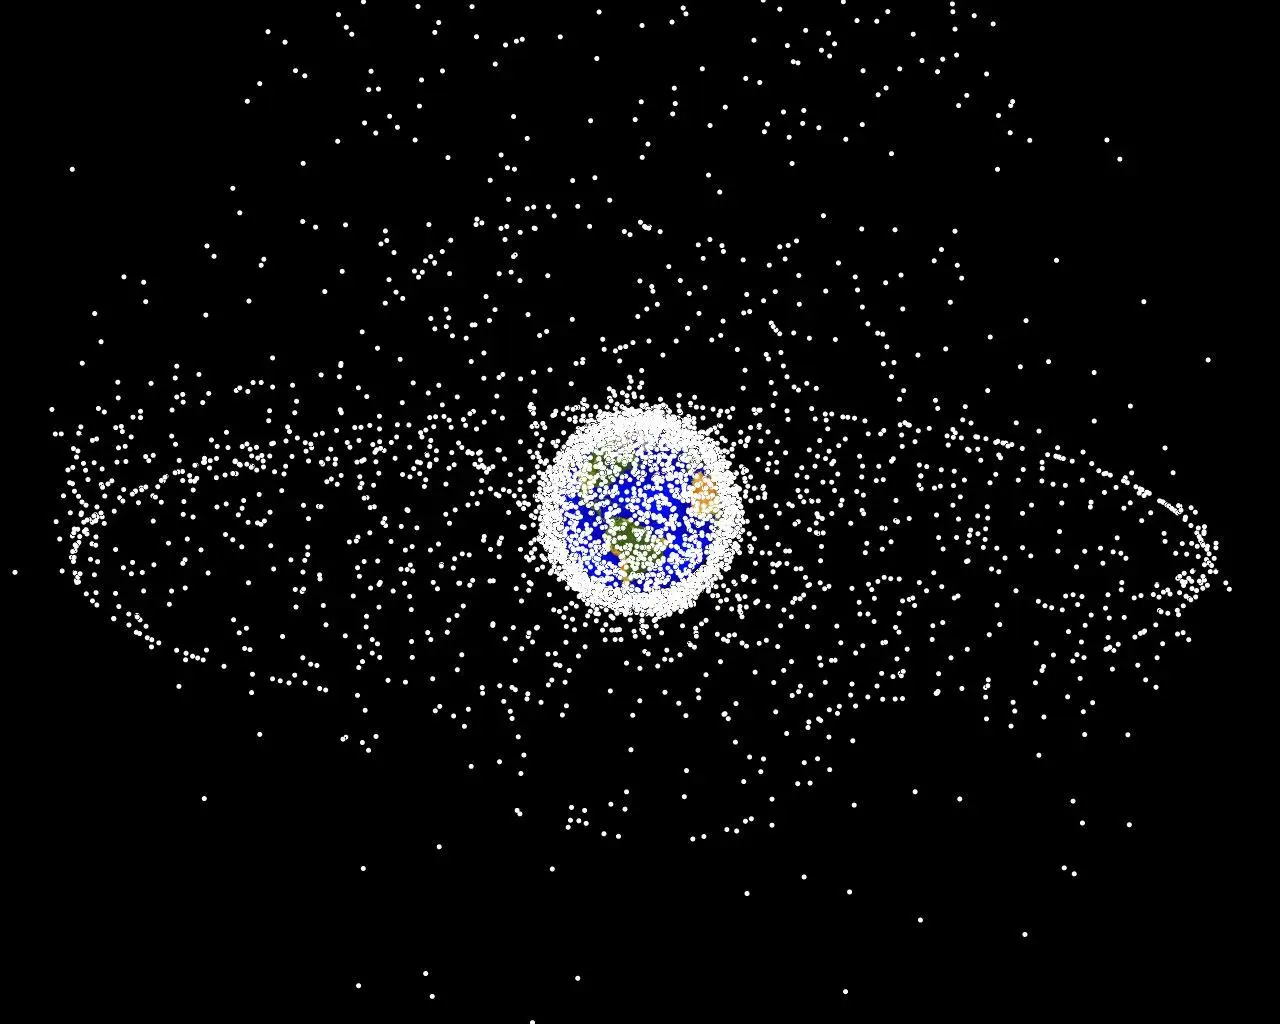 Ảnh dựng bởi máy tính về số lượng và vị trí của các vật thể rác trong quỹ đạo của Trái Đất mà con người đang theo dõi được. 95% trong số này là những mảnh vụn. Credit: Wikipedia.